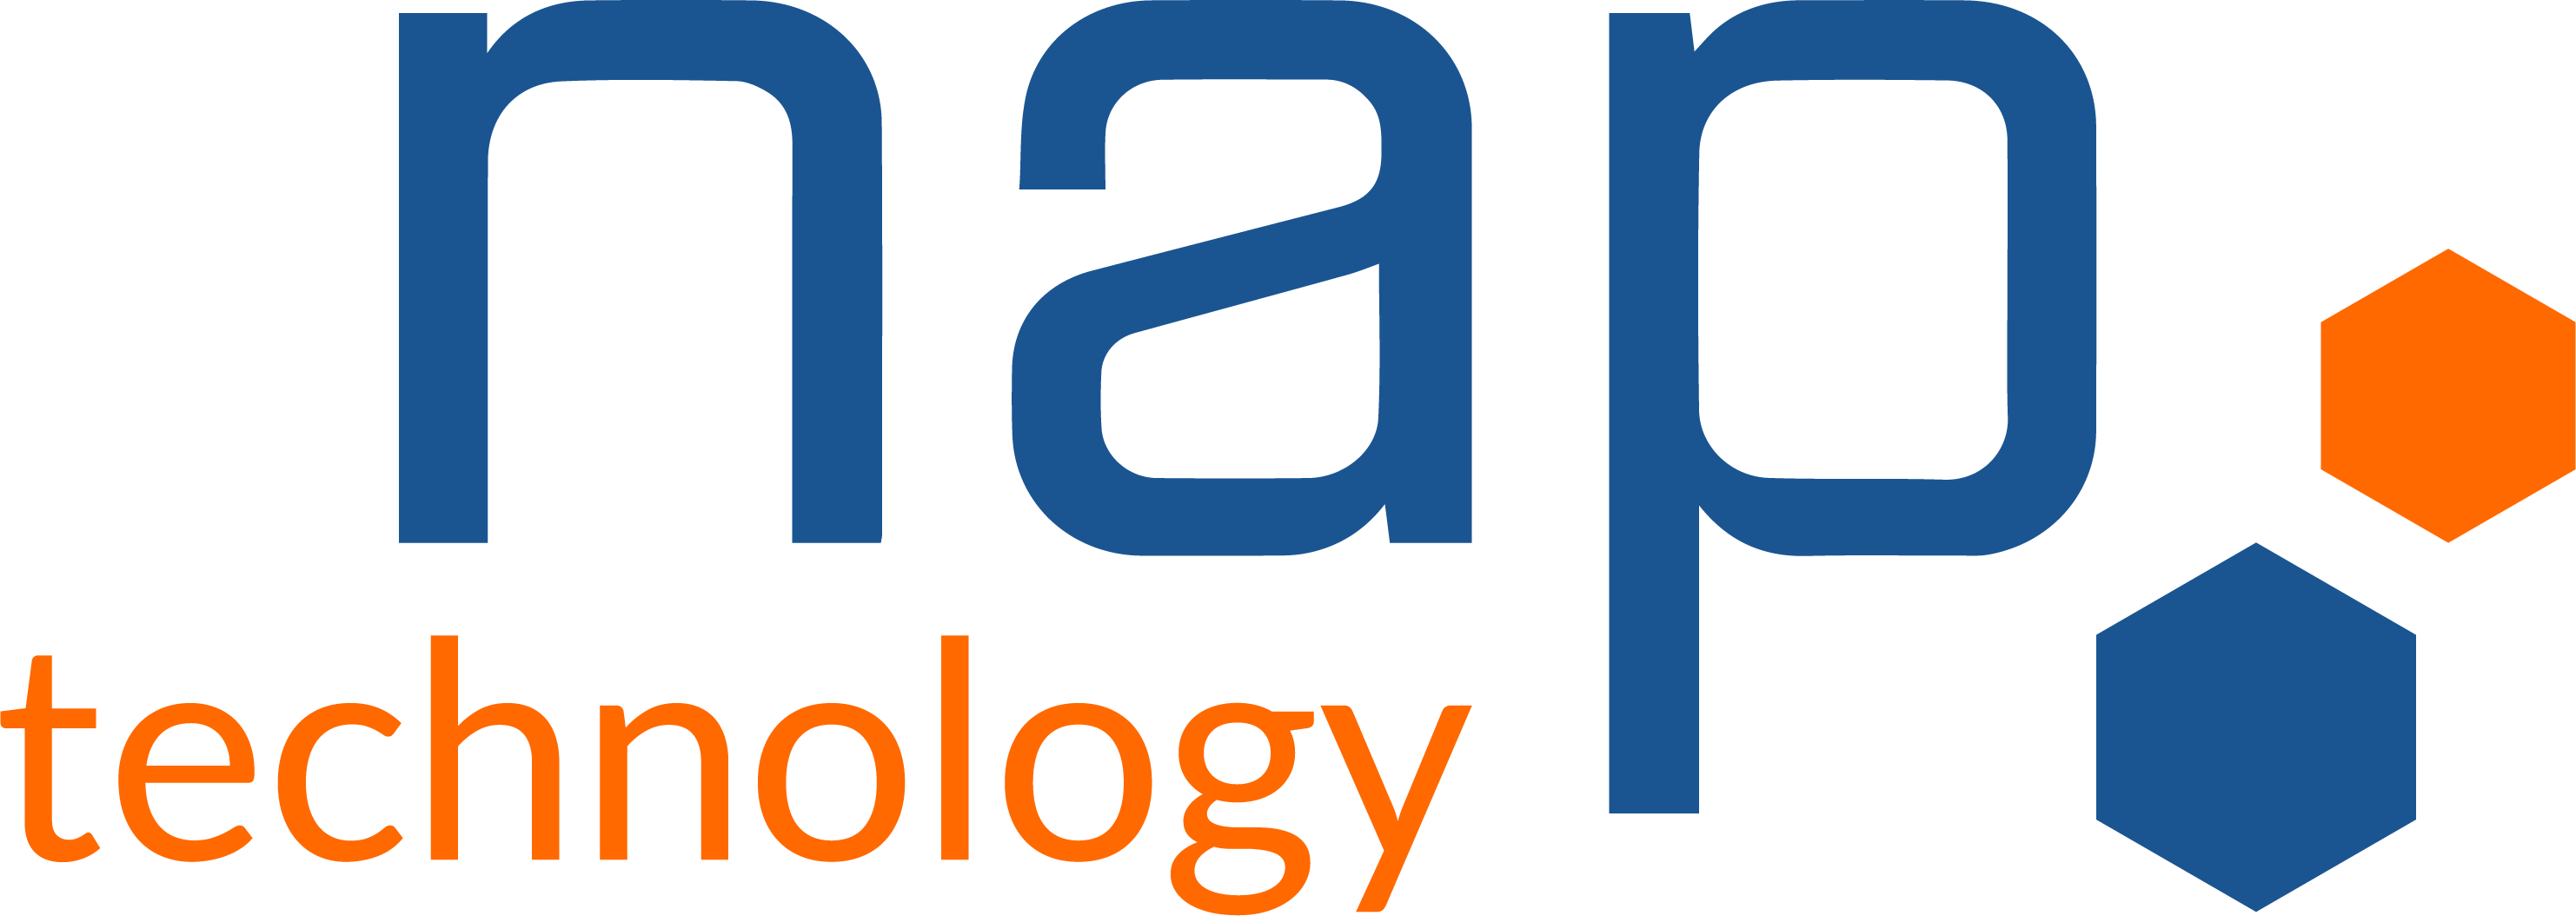 Logo NAP